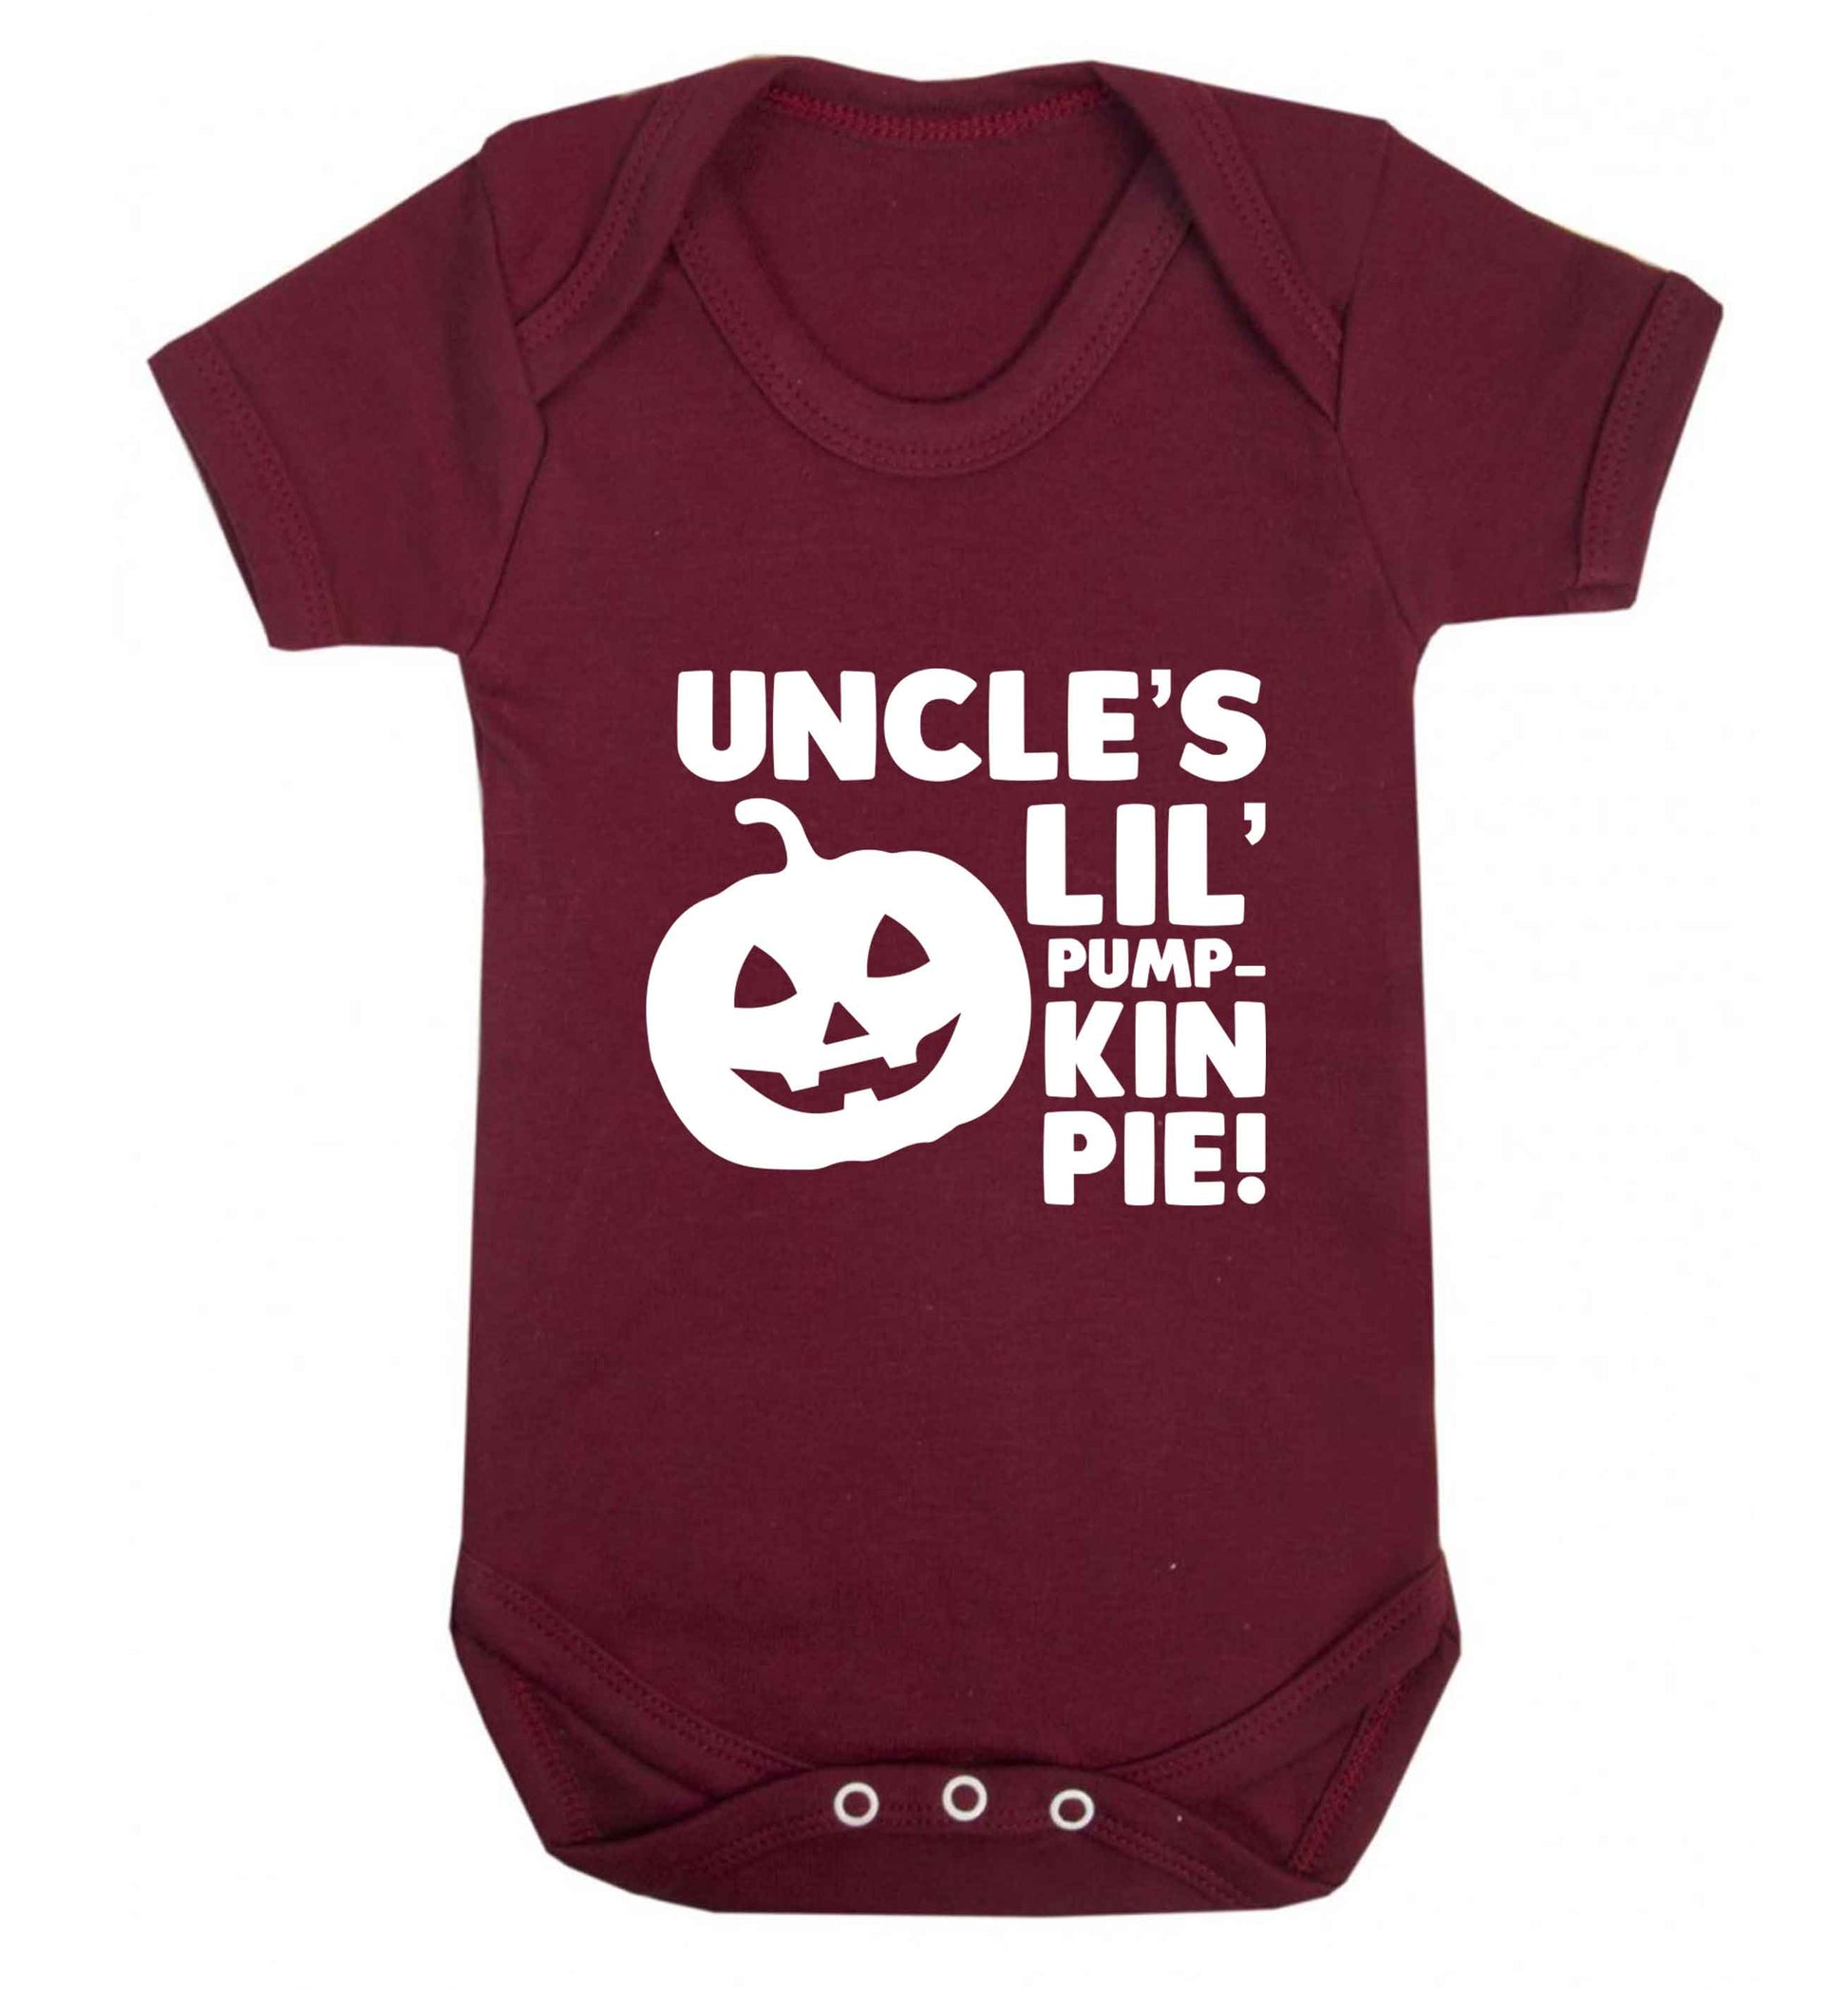 Uncle's lil' pumpkin pie baby vest maroon 18-24 months